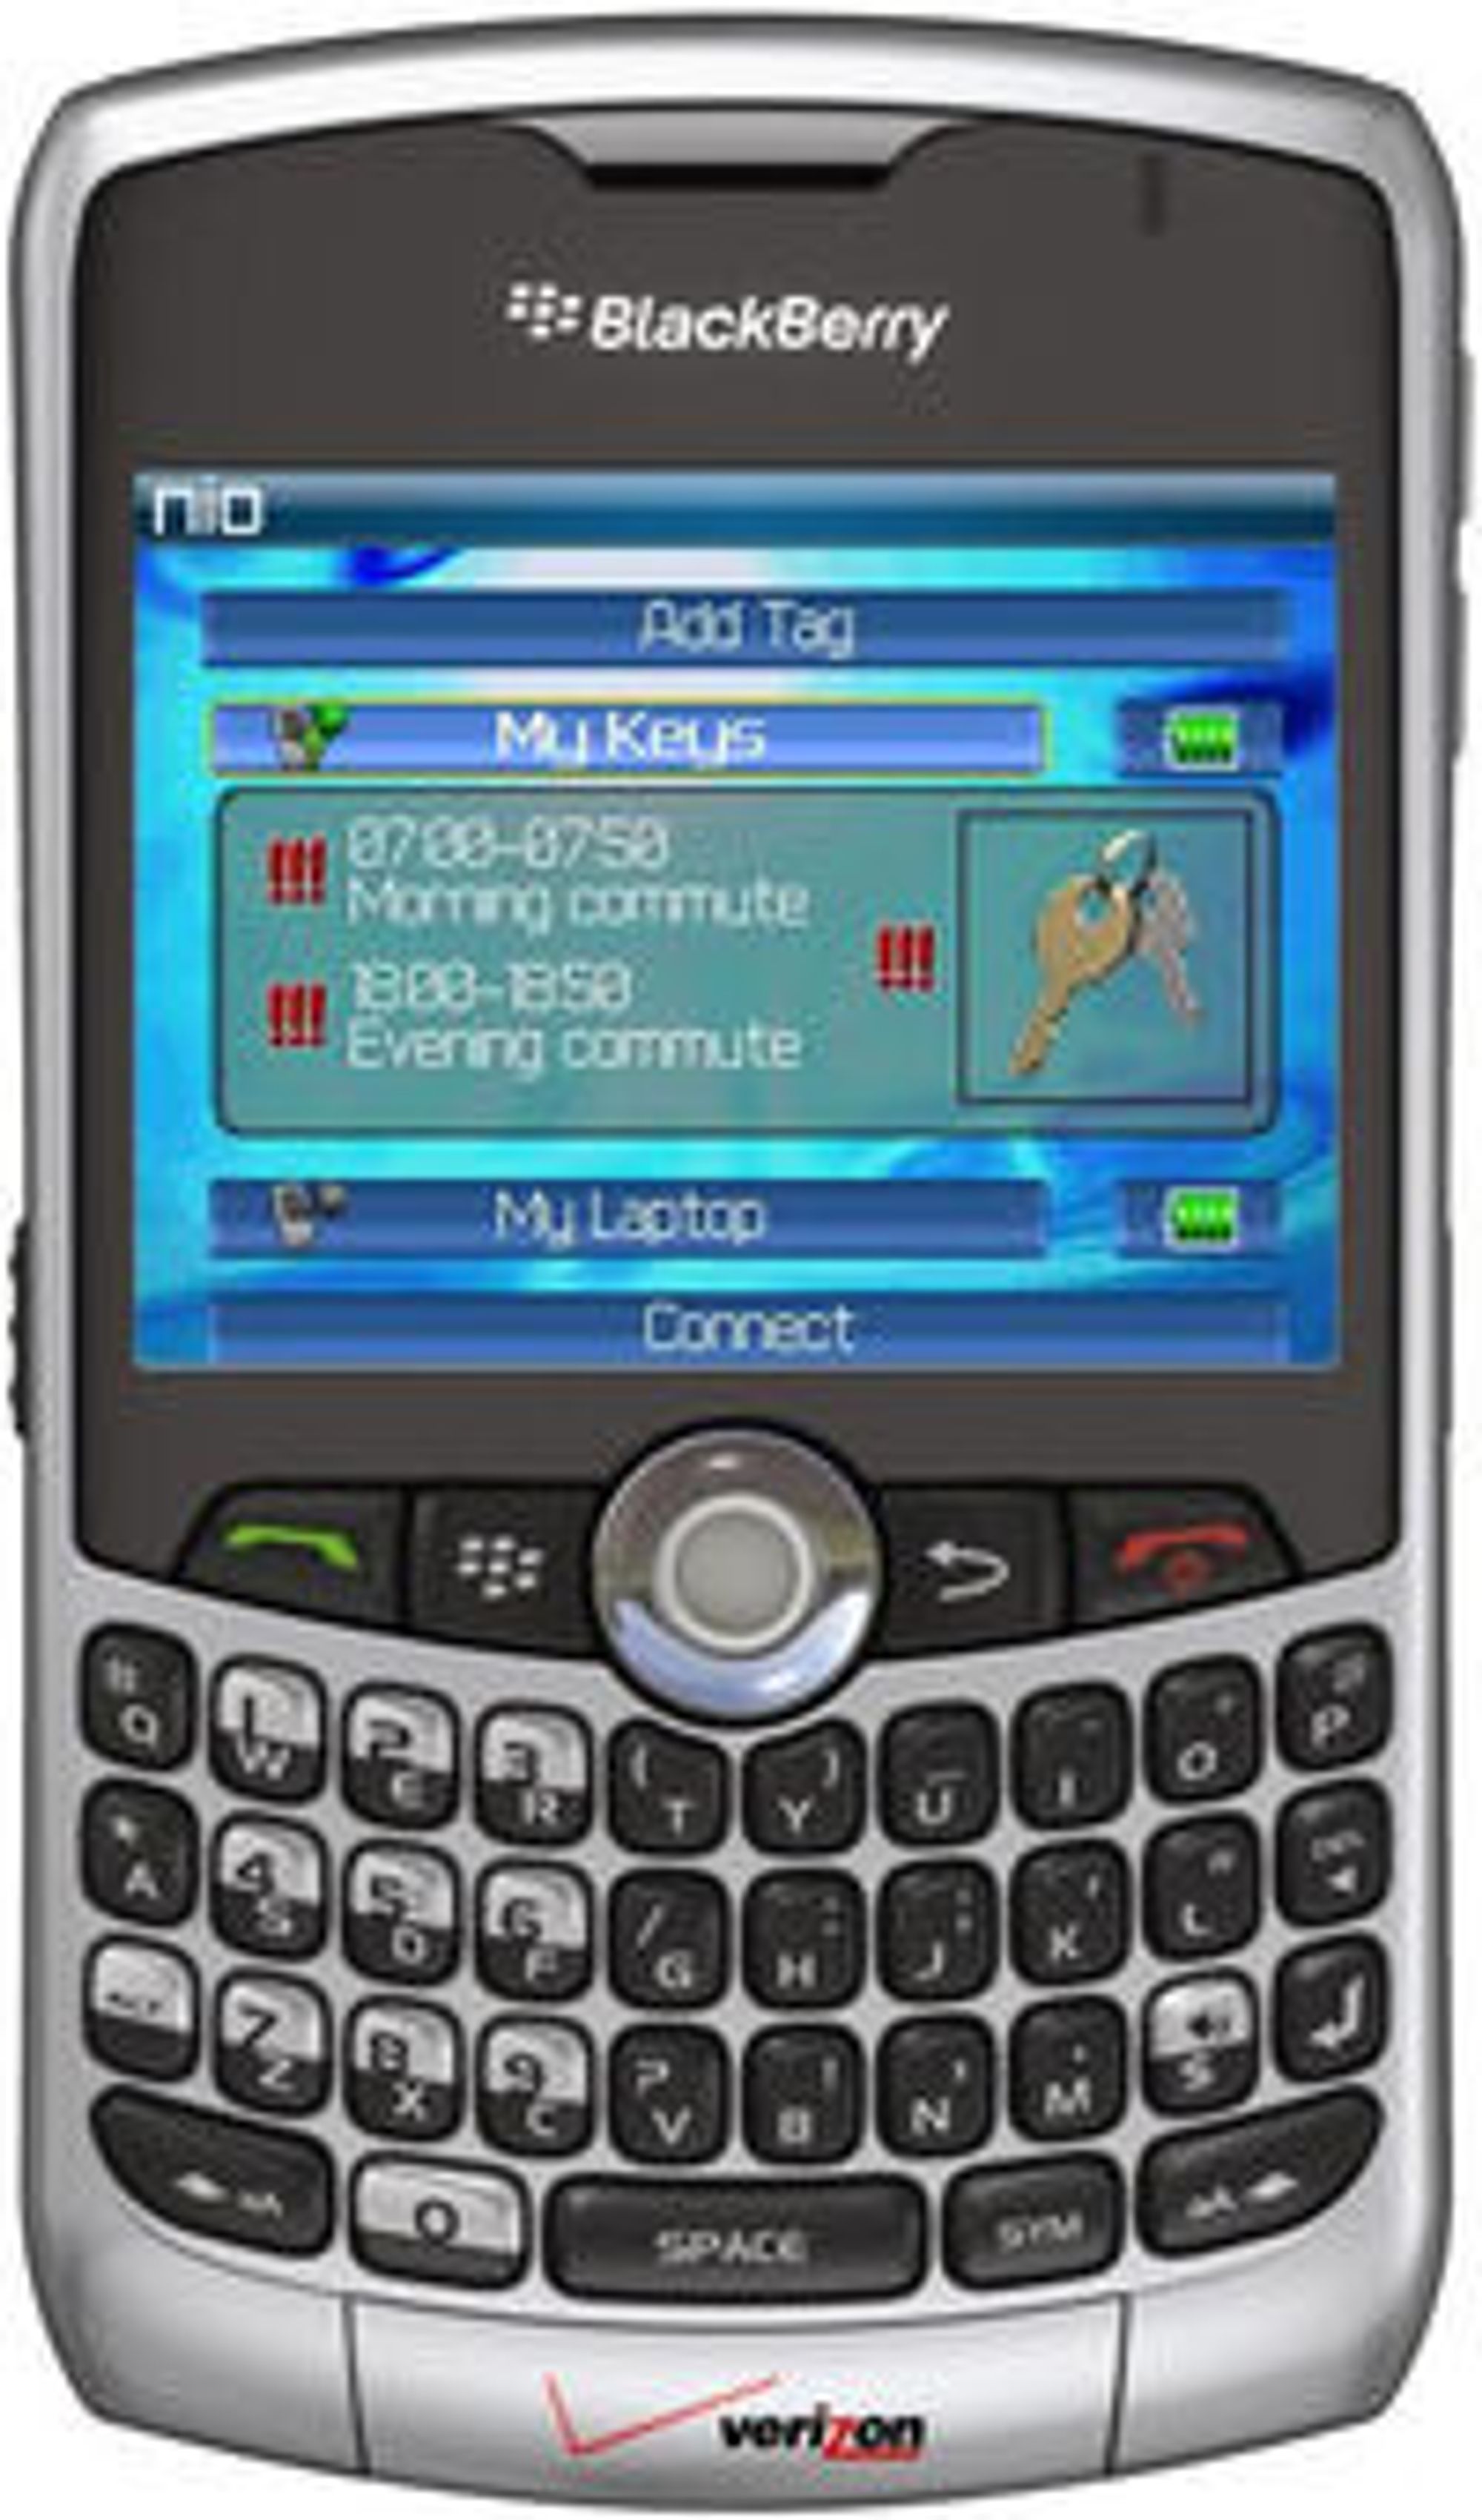 Nio på Blackberry: Skjermen viser at Nio-brikken på nøkkelringen er aktiv hver dag fra 0700 til 0750 og fra 1800 til 1850. Alle brikkene man har, styres fra Nio-programmet på mobiltelefonen.